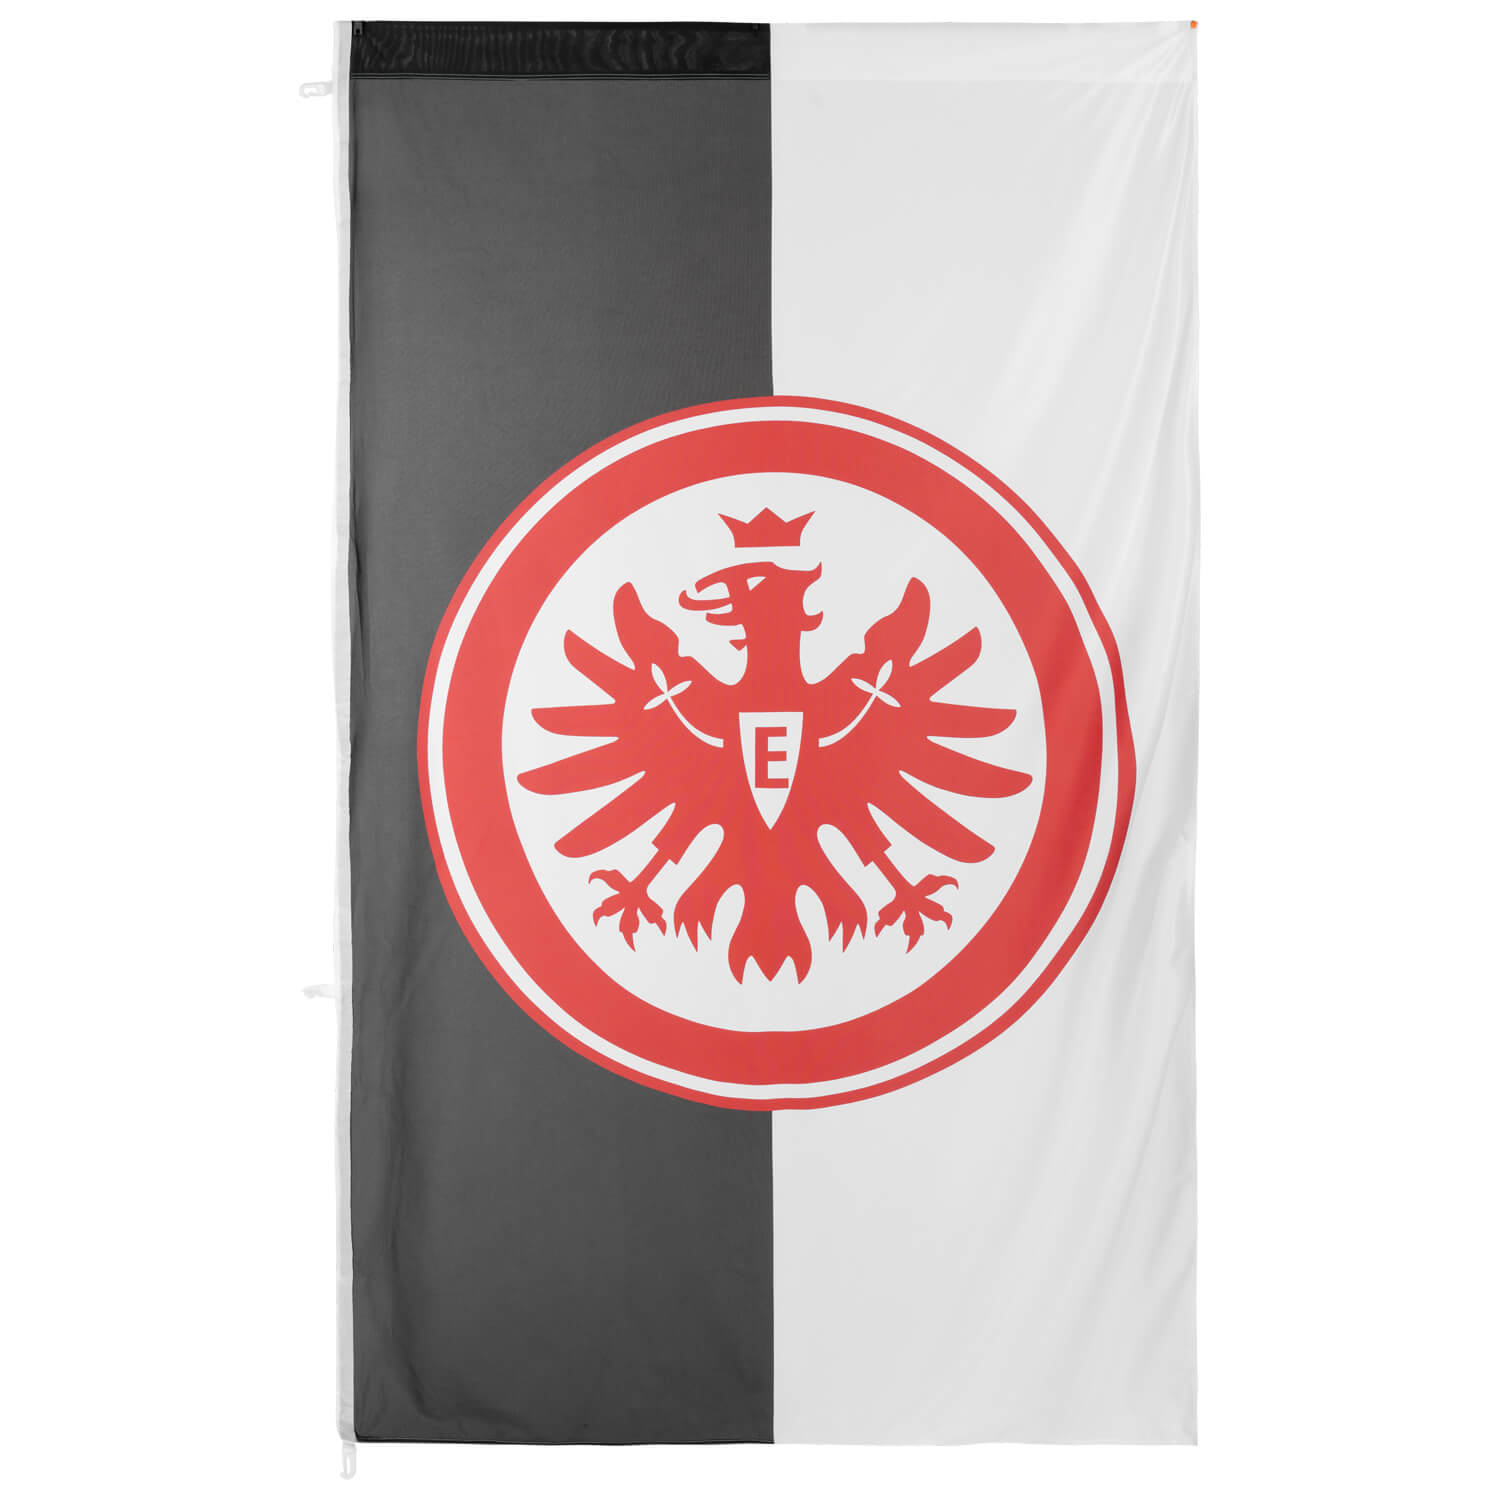 Bild 1: Hissfahne Logo schwarz/weiss 150 x 250cm